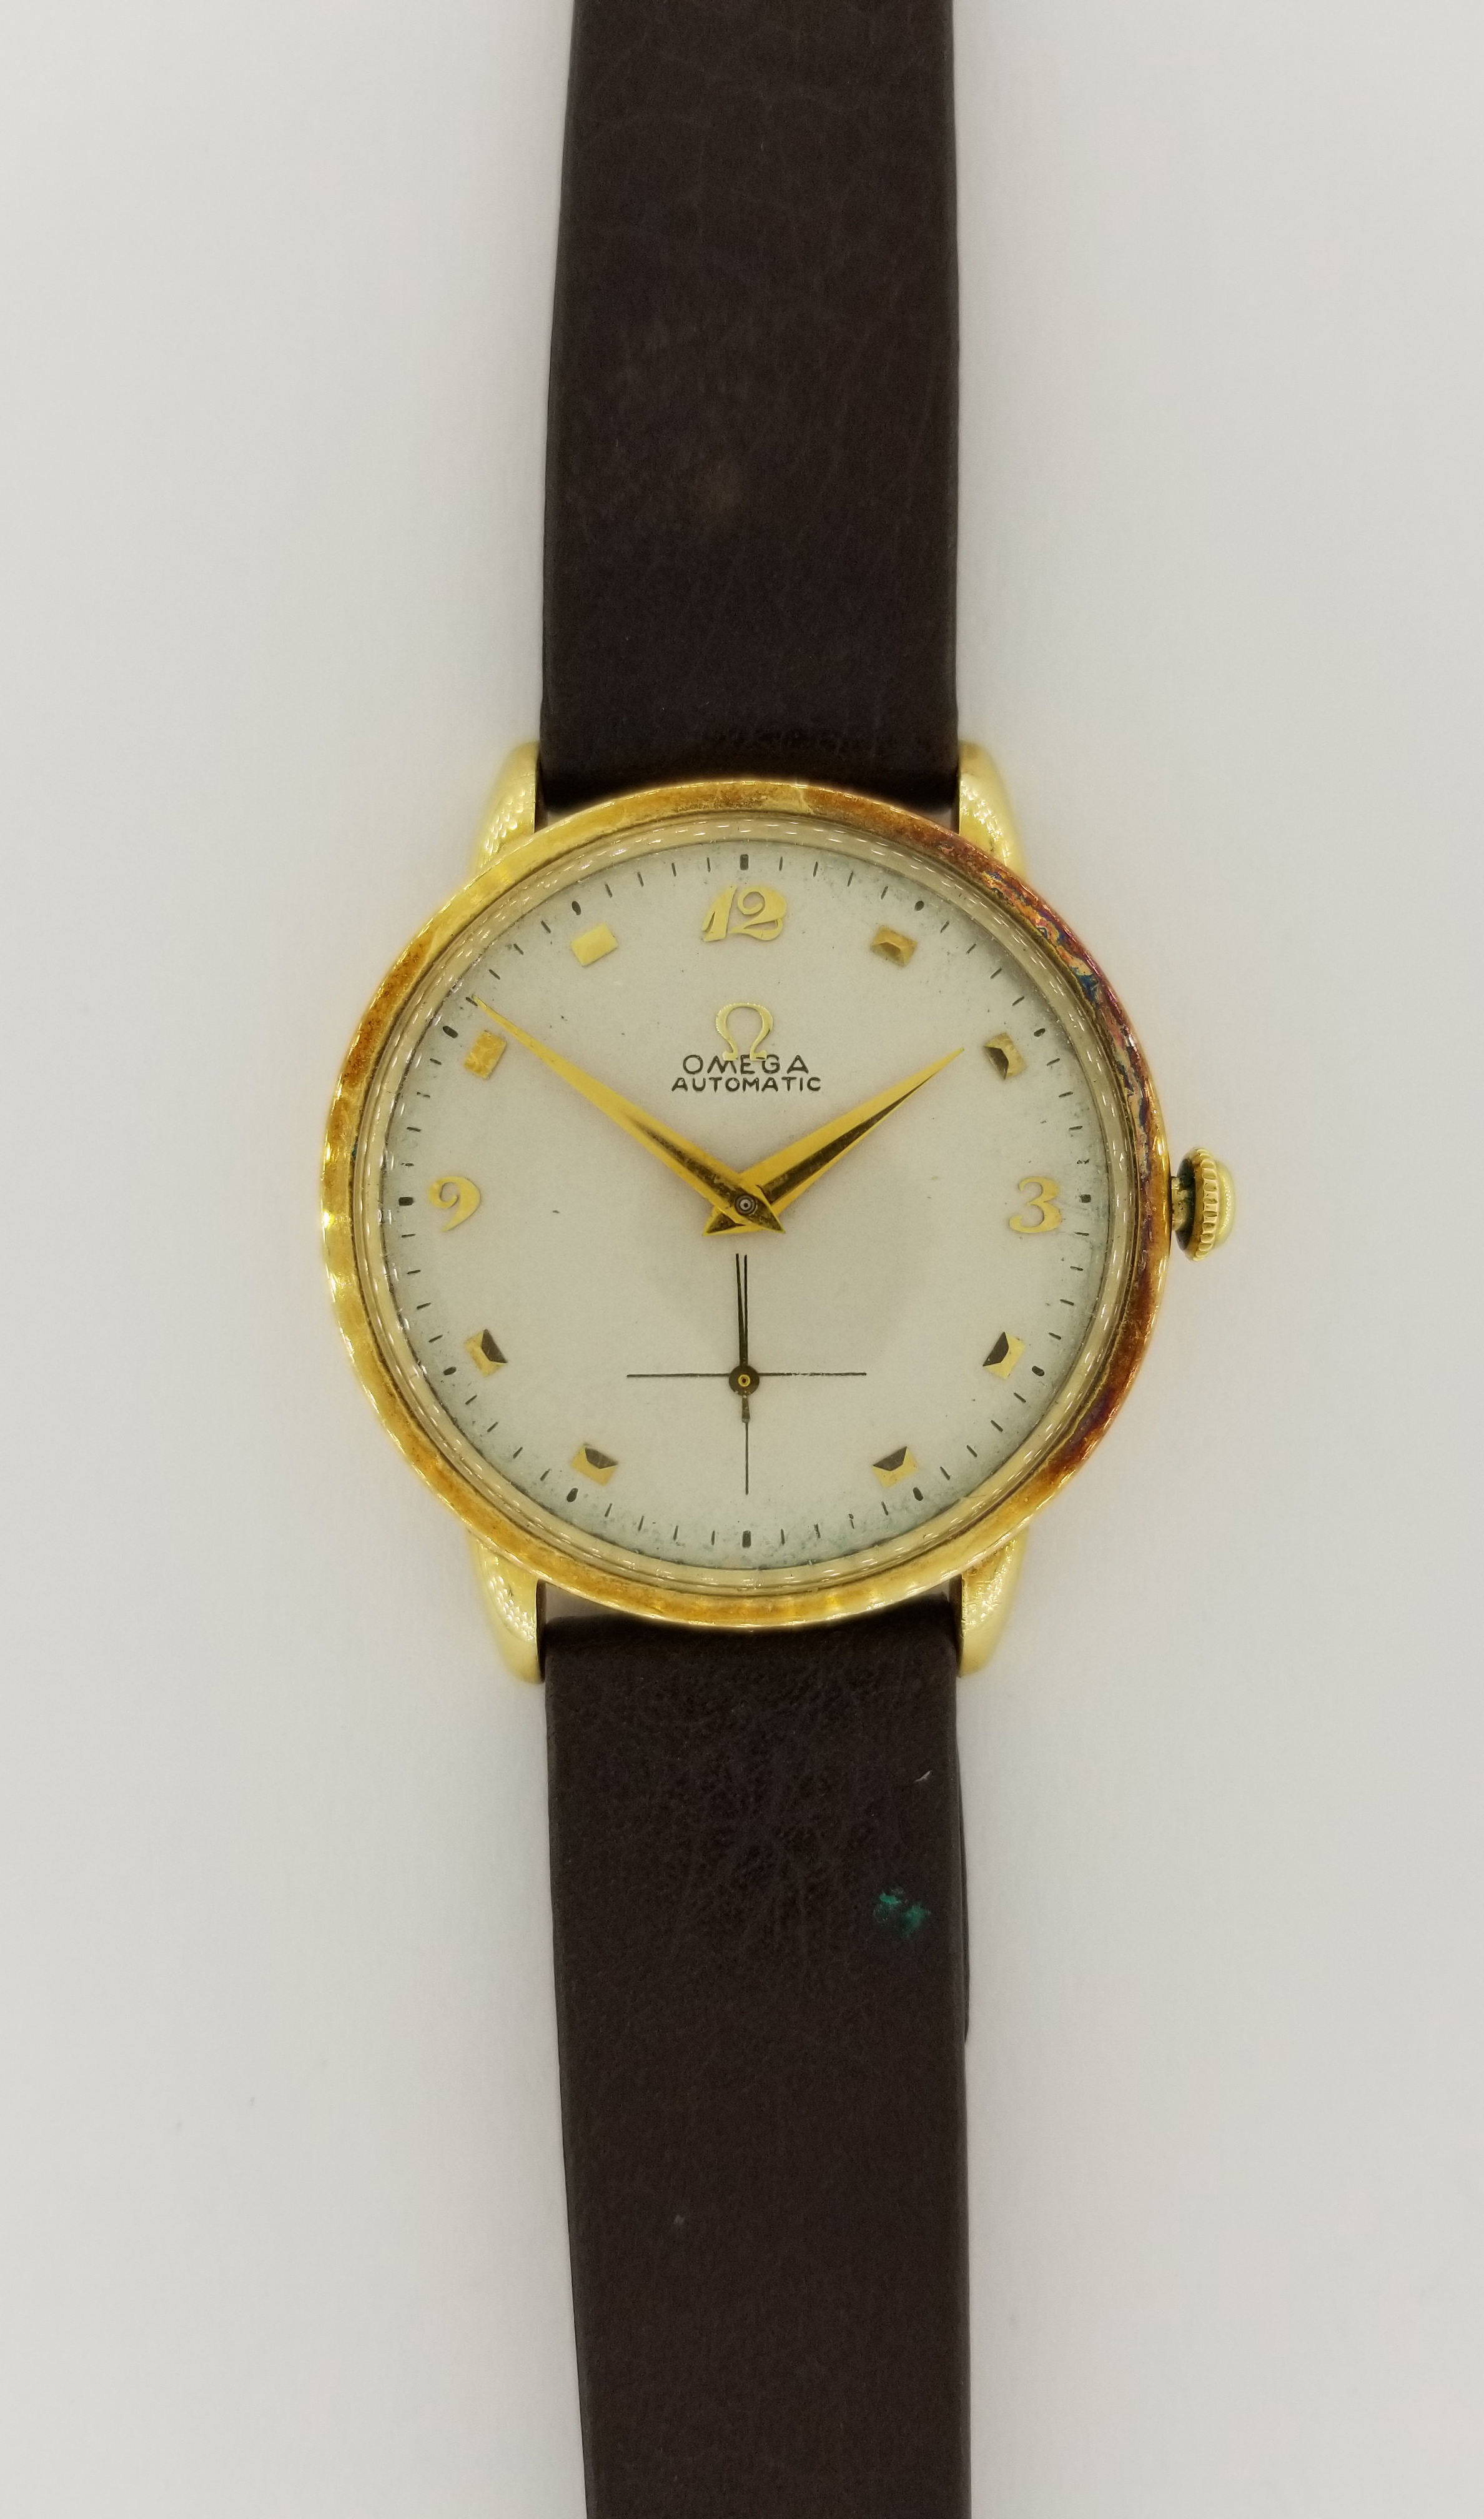 Vintage 14K Gold Omega Watch - Image 2 of 8